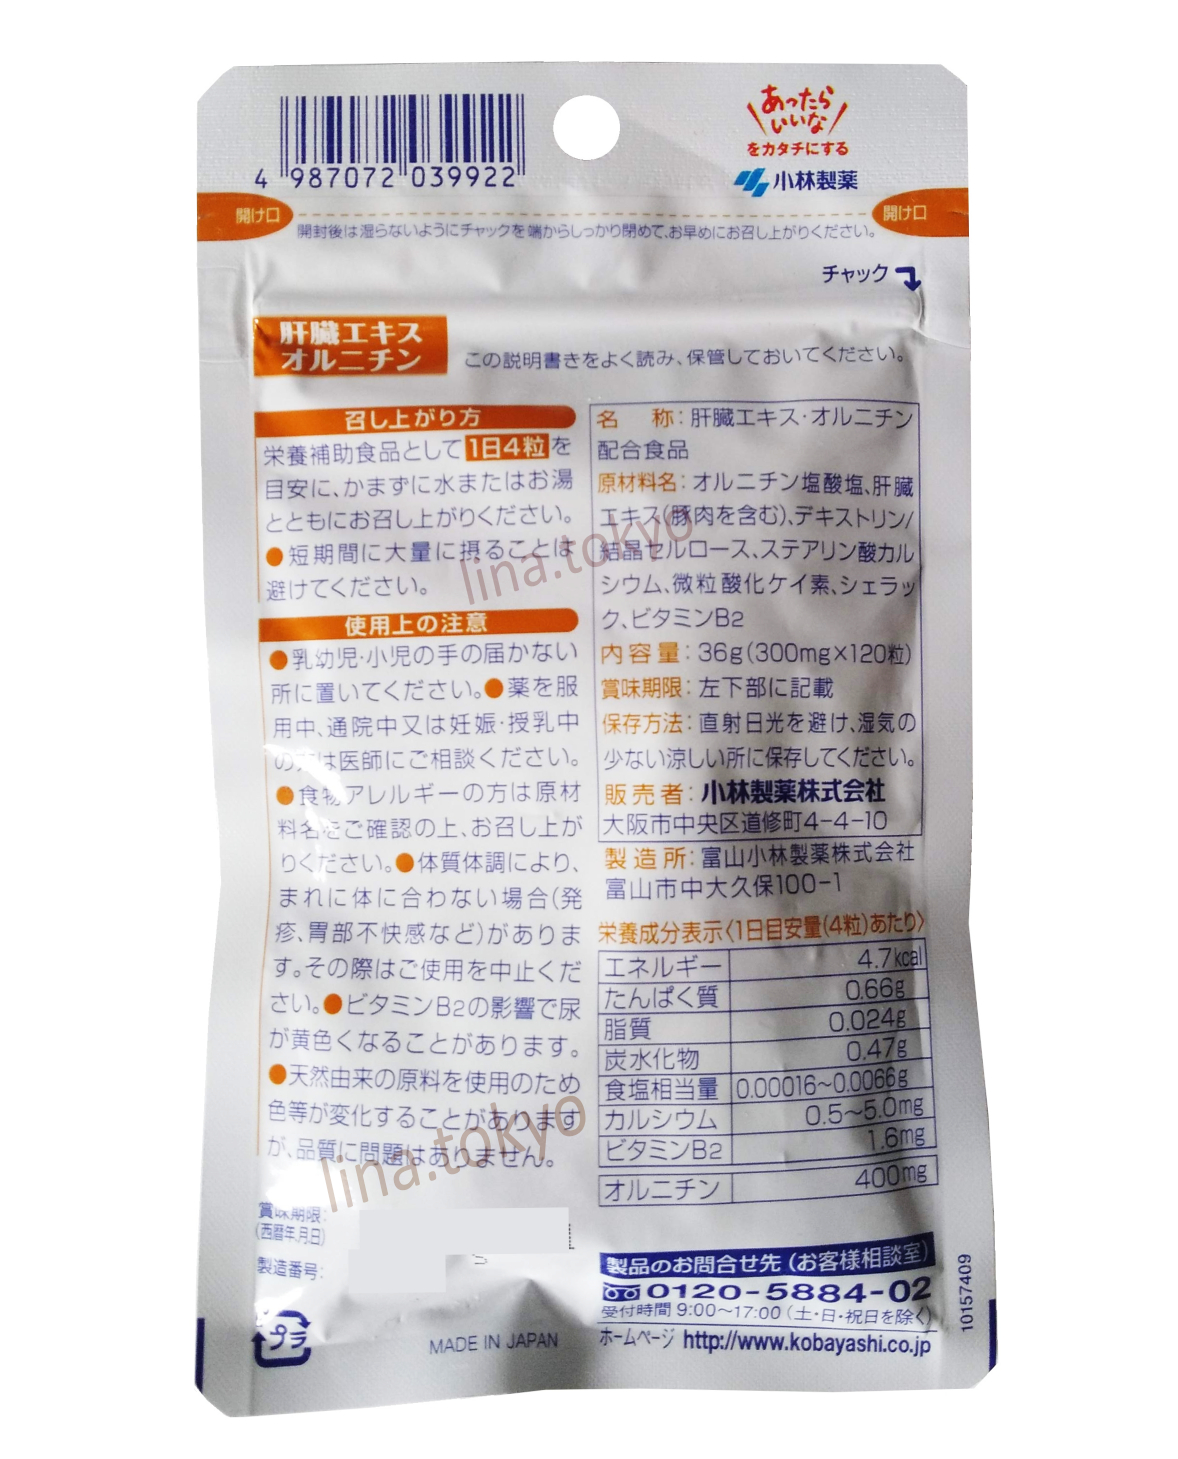 N30064- Koyabashi Liver extract